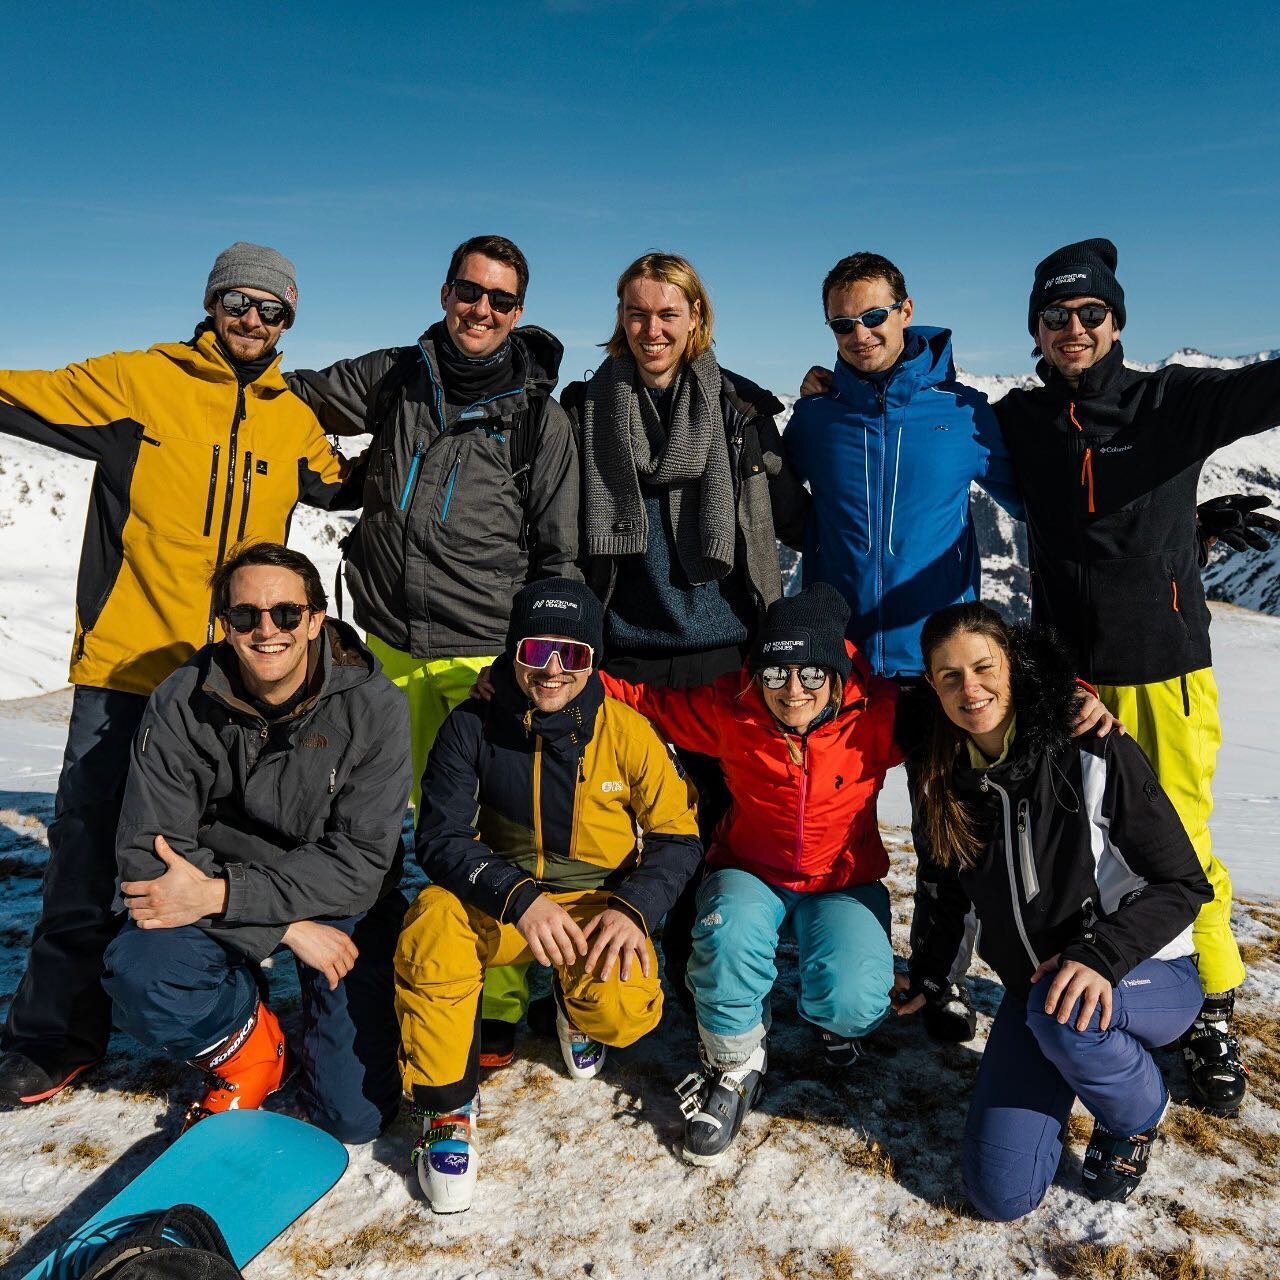 Instagram versus realiteit 😅 Niet makkelijk om te poseren met skischoenen 🎿 Zo leuk om al die blije gezichten te zien! #memories #throwback #skiweek #snowvenues